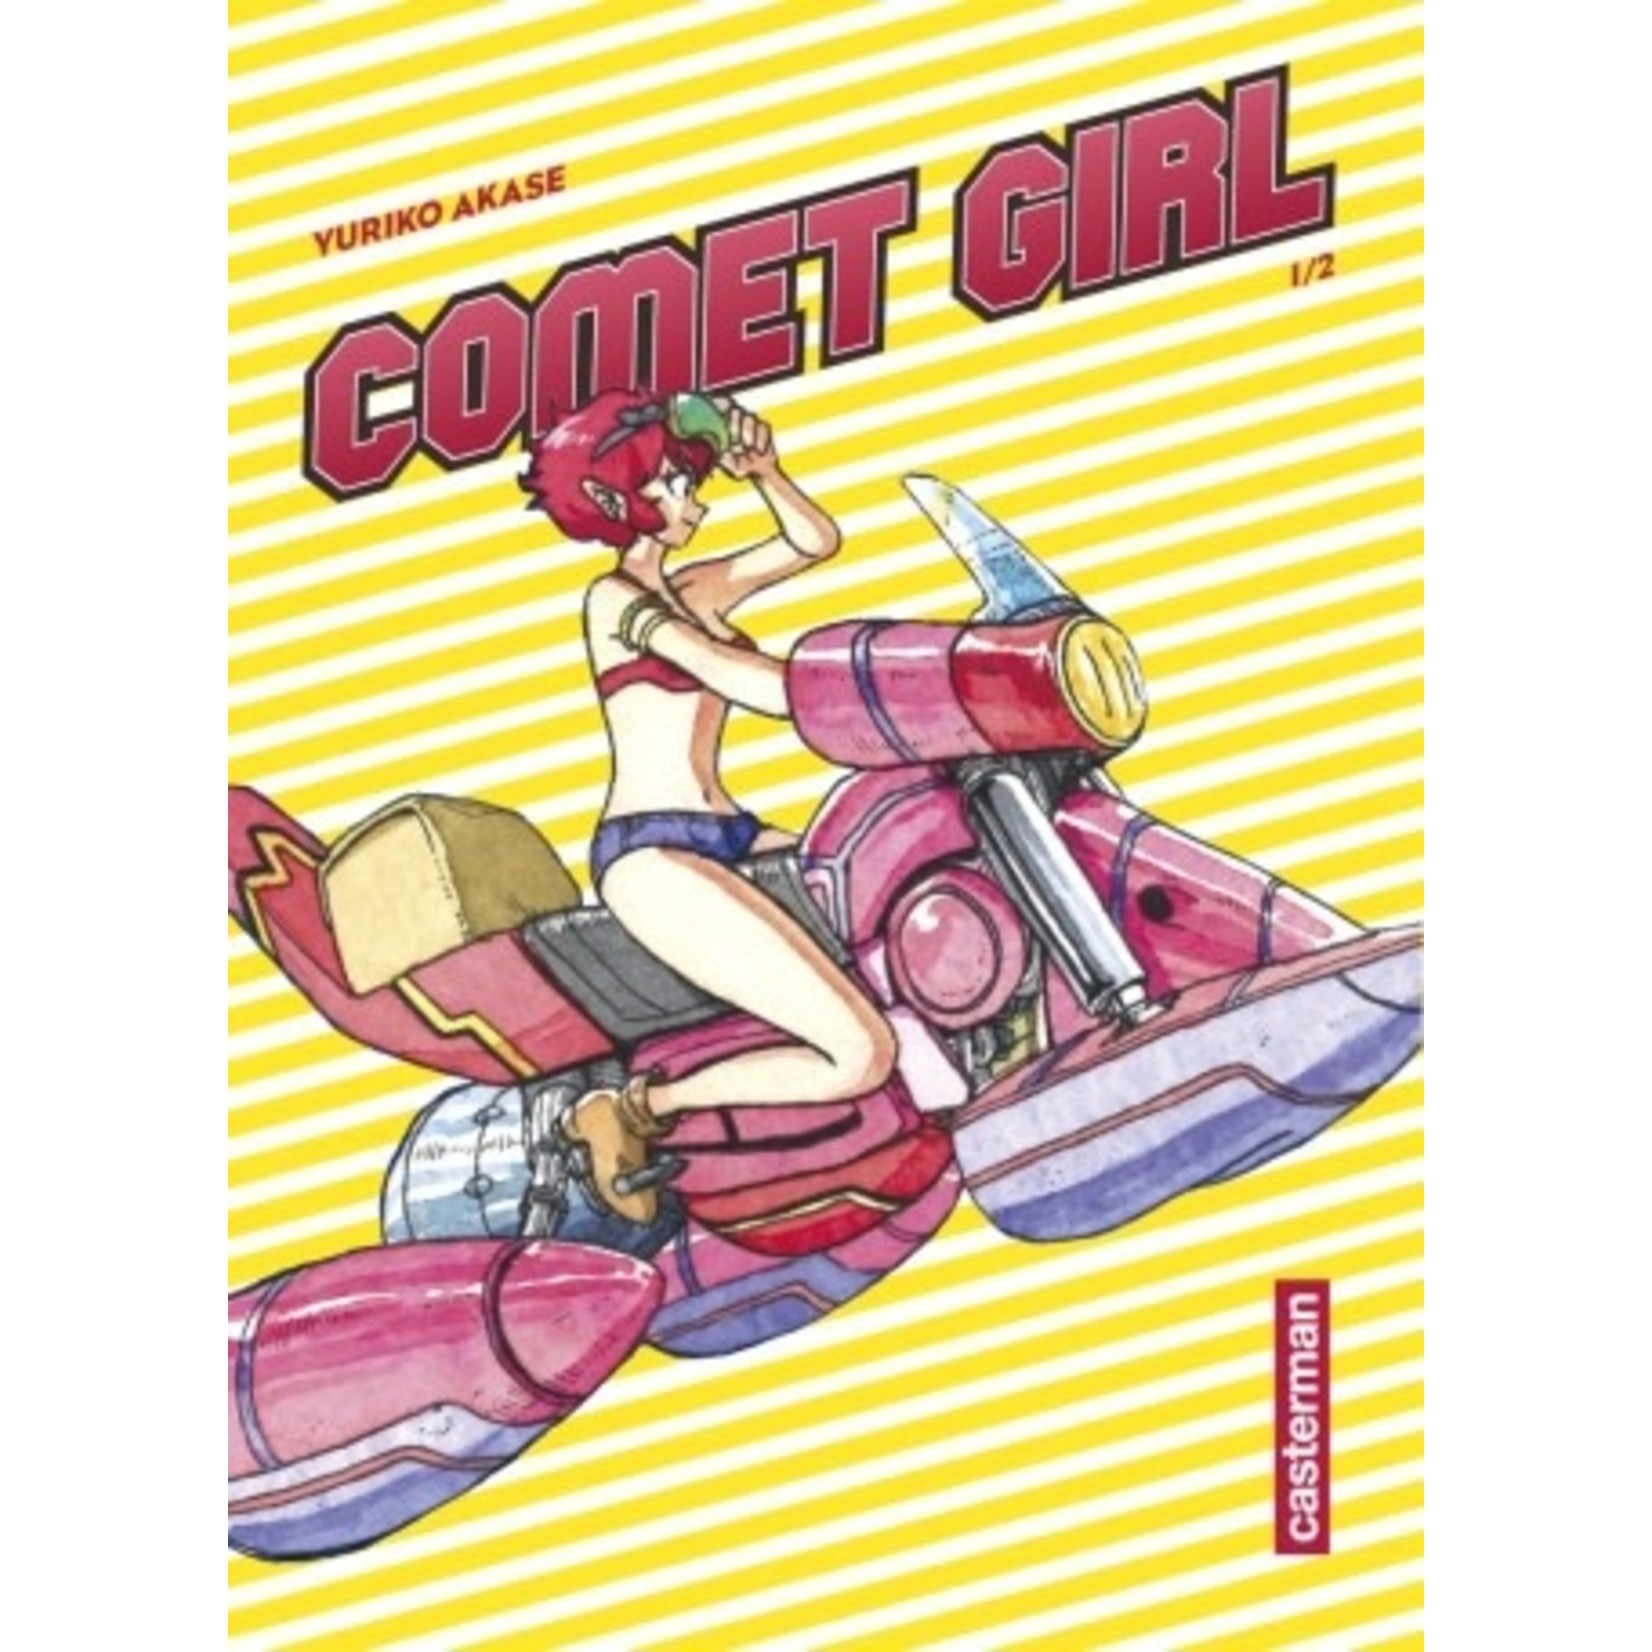 0-Casterman Comet girl